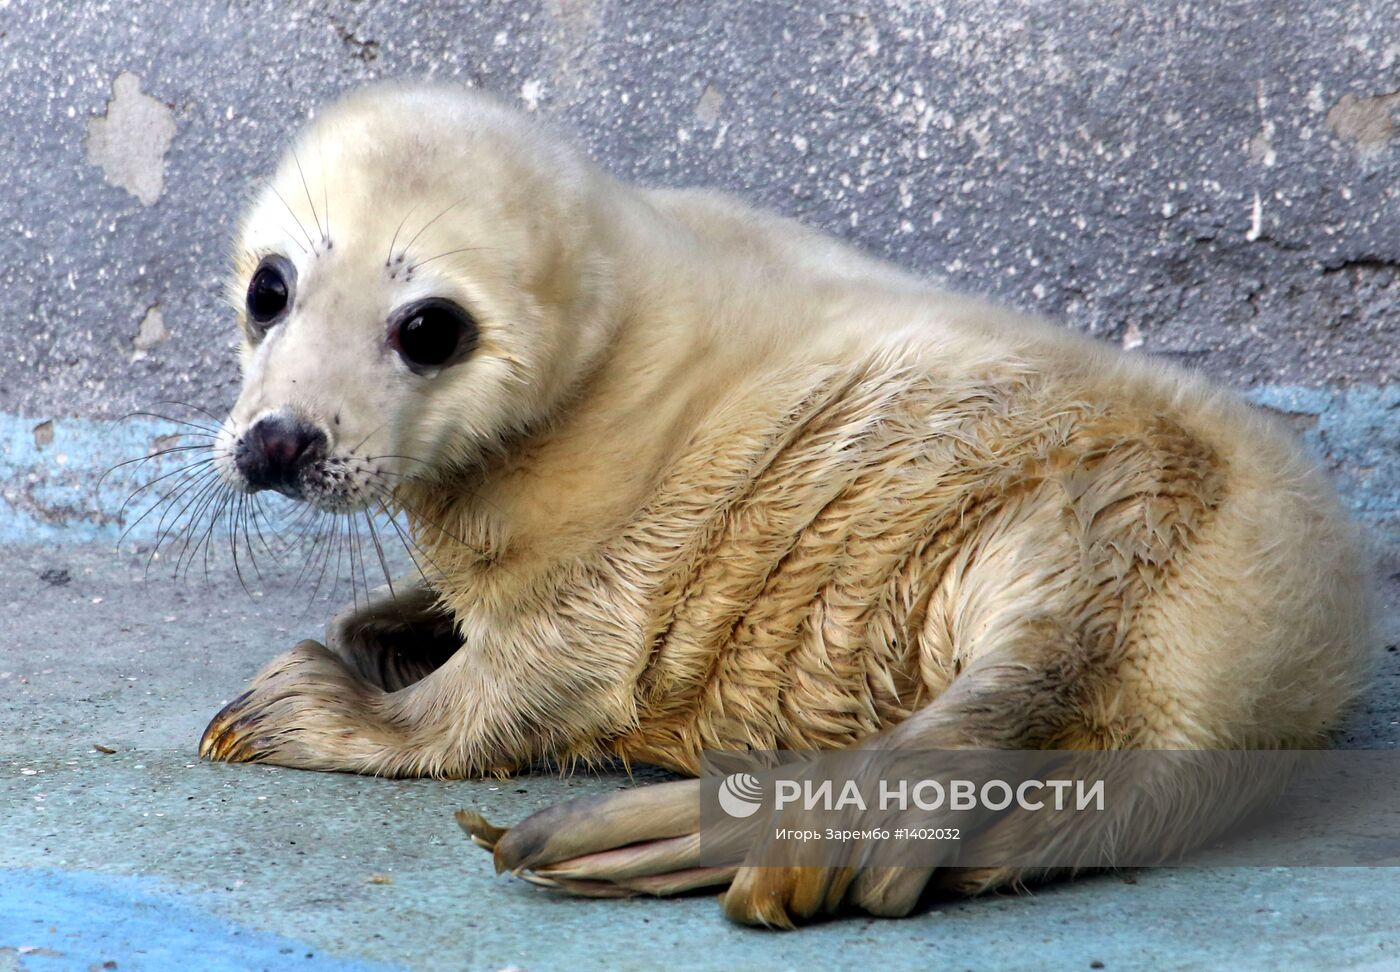 Прибавление в семействе серых тюленей калининградского зоопарка